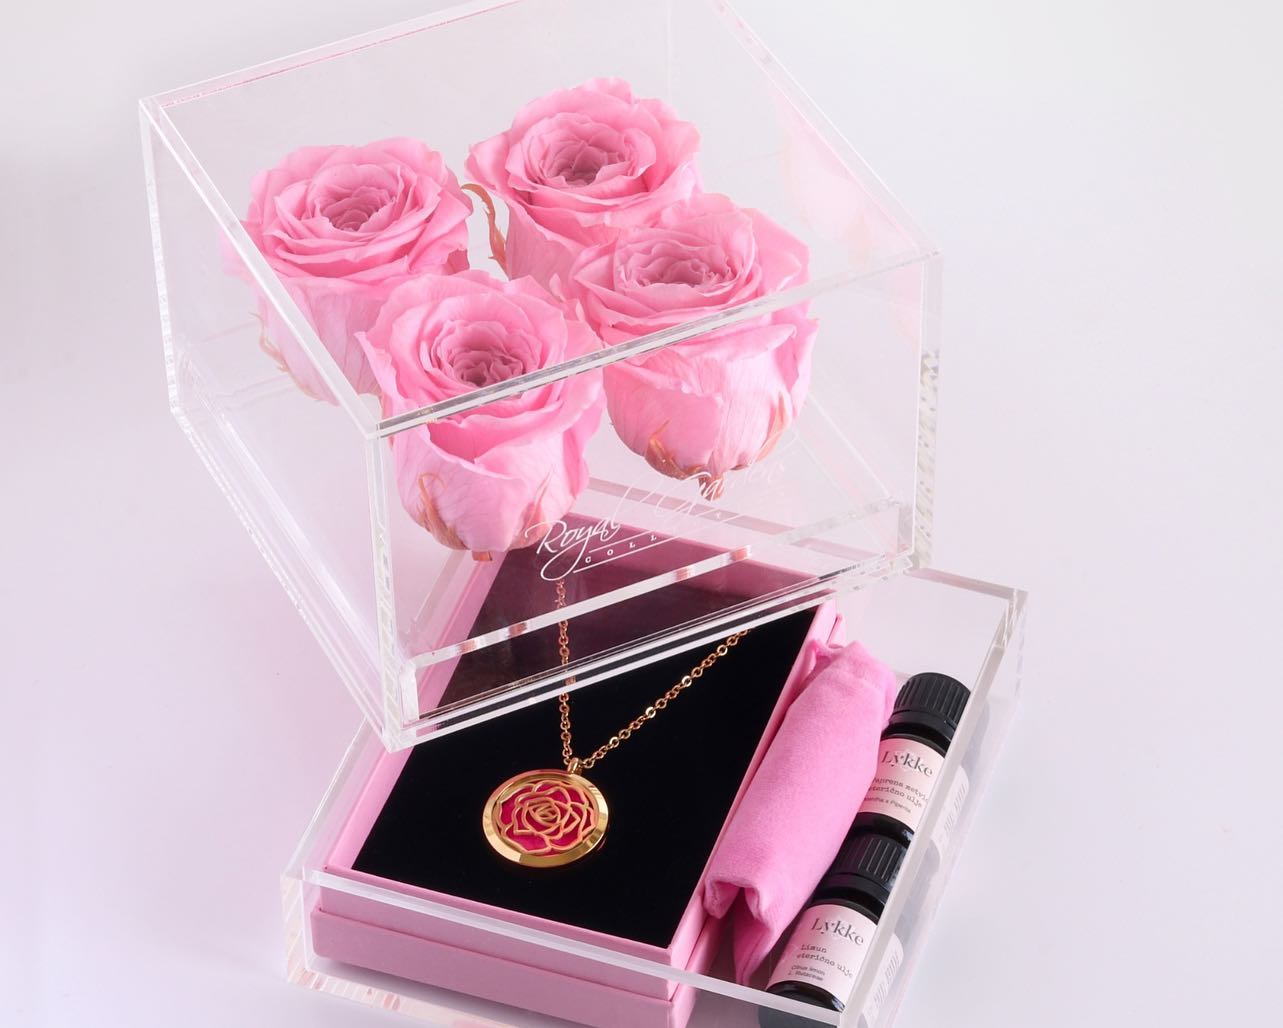 Sve žene koje vole cvijeće, nakit i parfeme oduševit će se ovim poklonom!